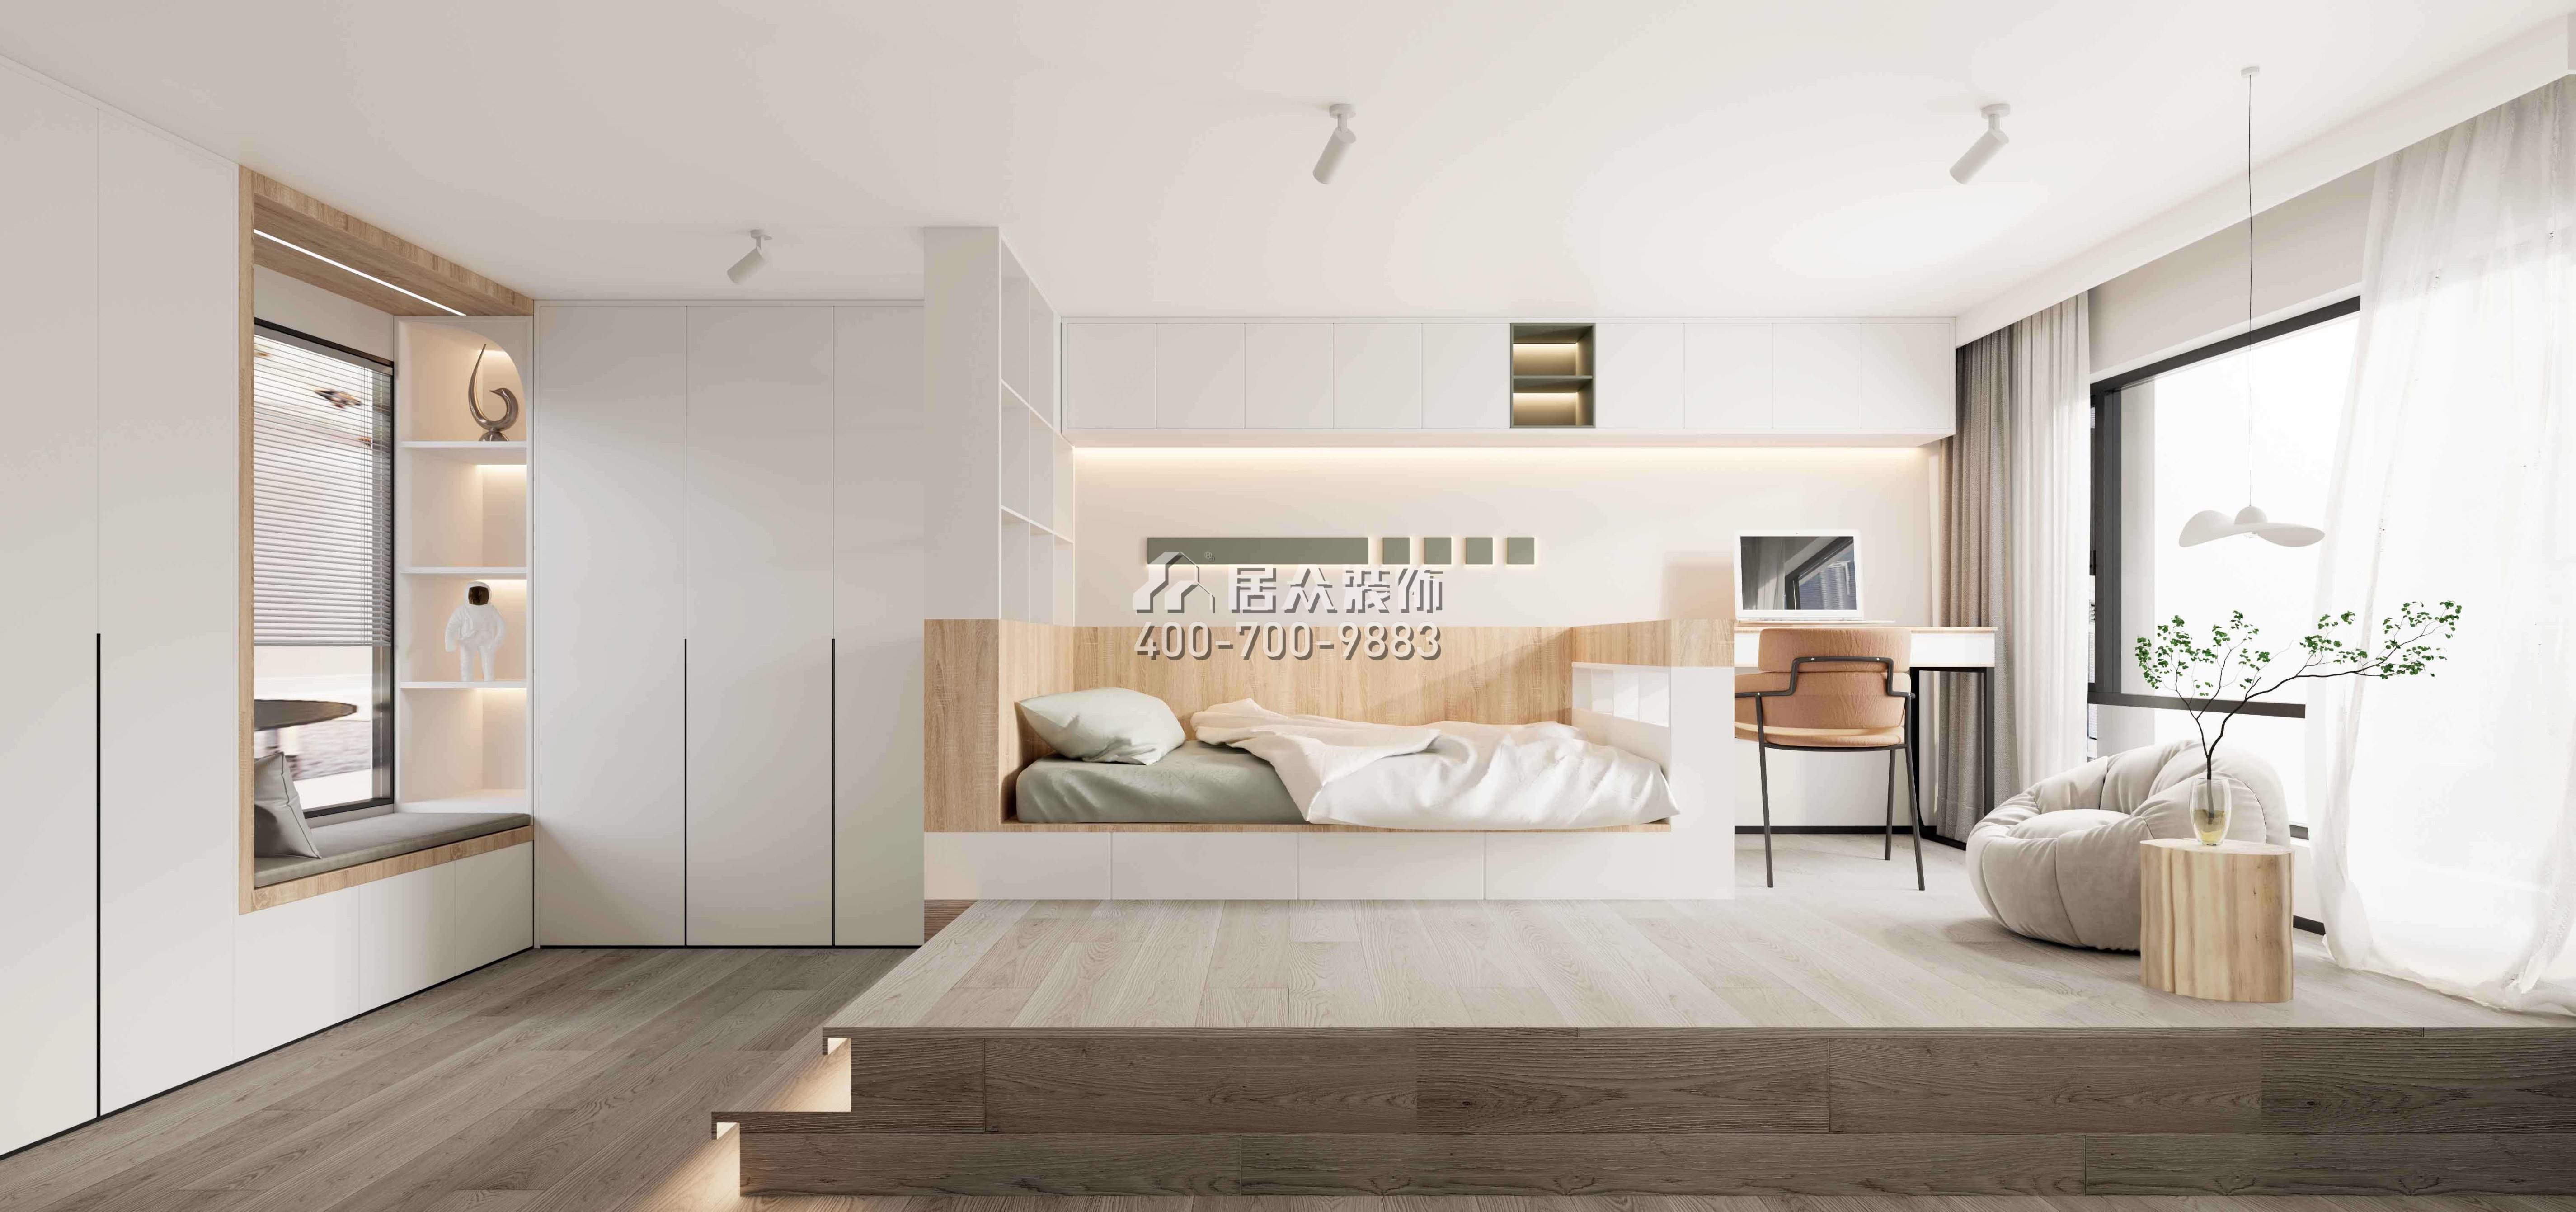 万科臻湾汇120平方米现代简约风格复式户型卧室书房一体装修效果图